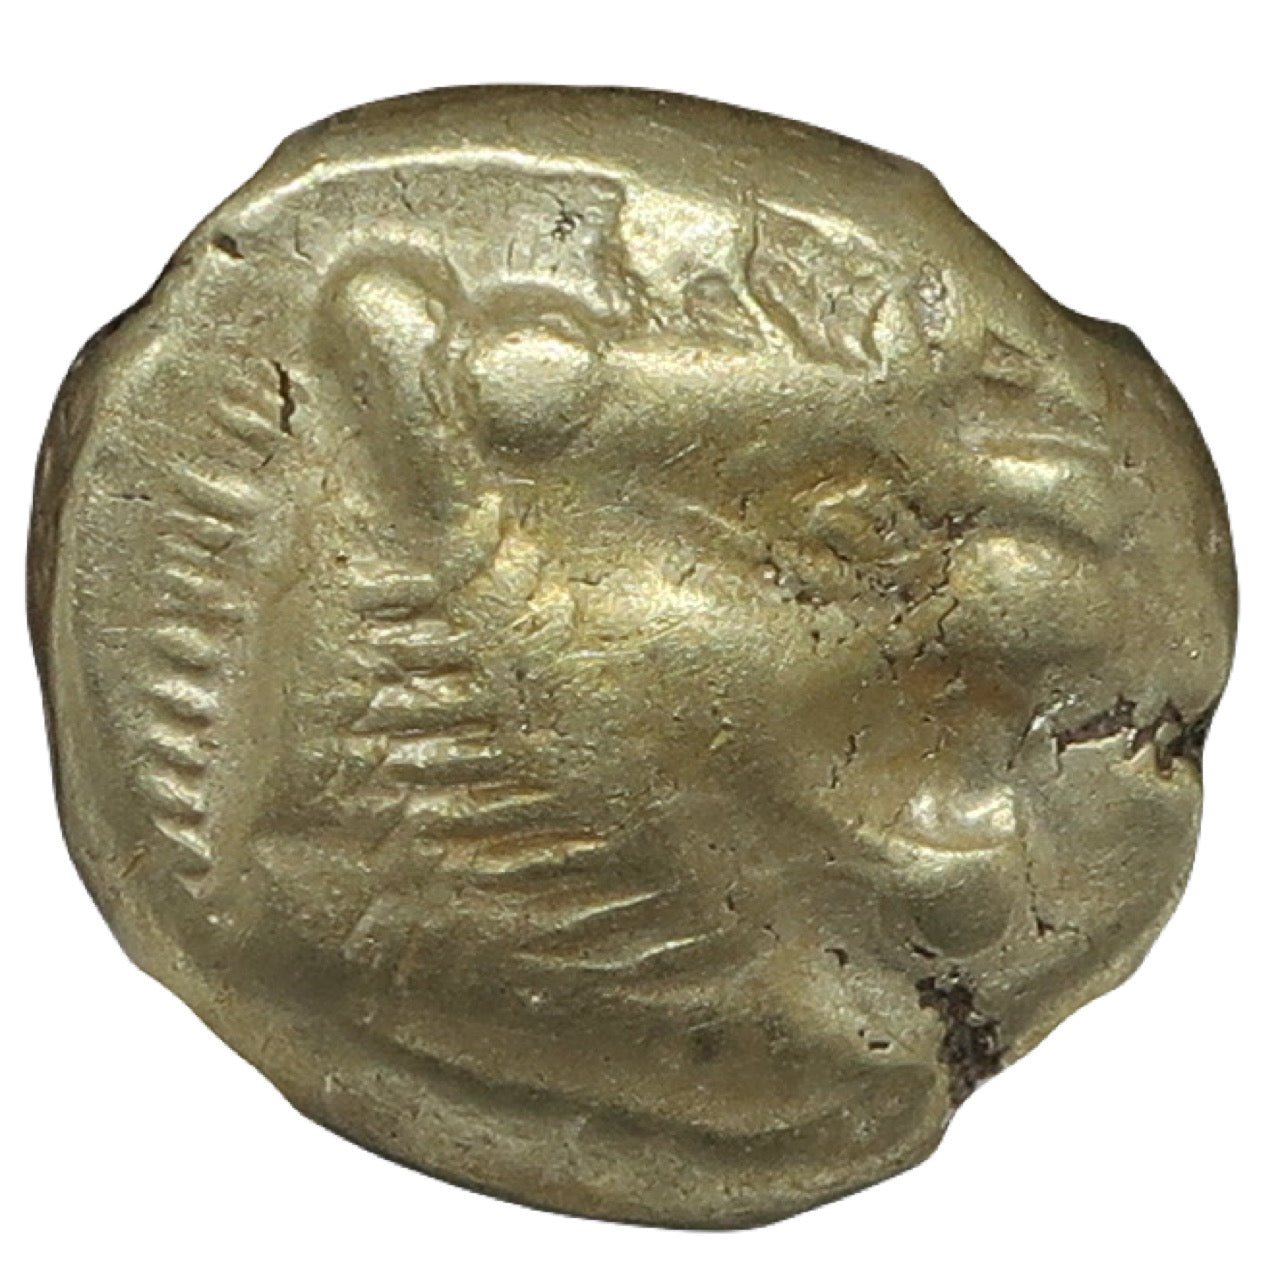 610-546 BC リディア帝国 1/3スタテル エレクトロン金貨 ChVF 5/5-4/5 